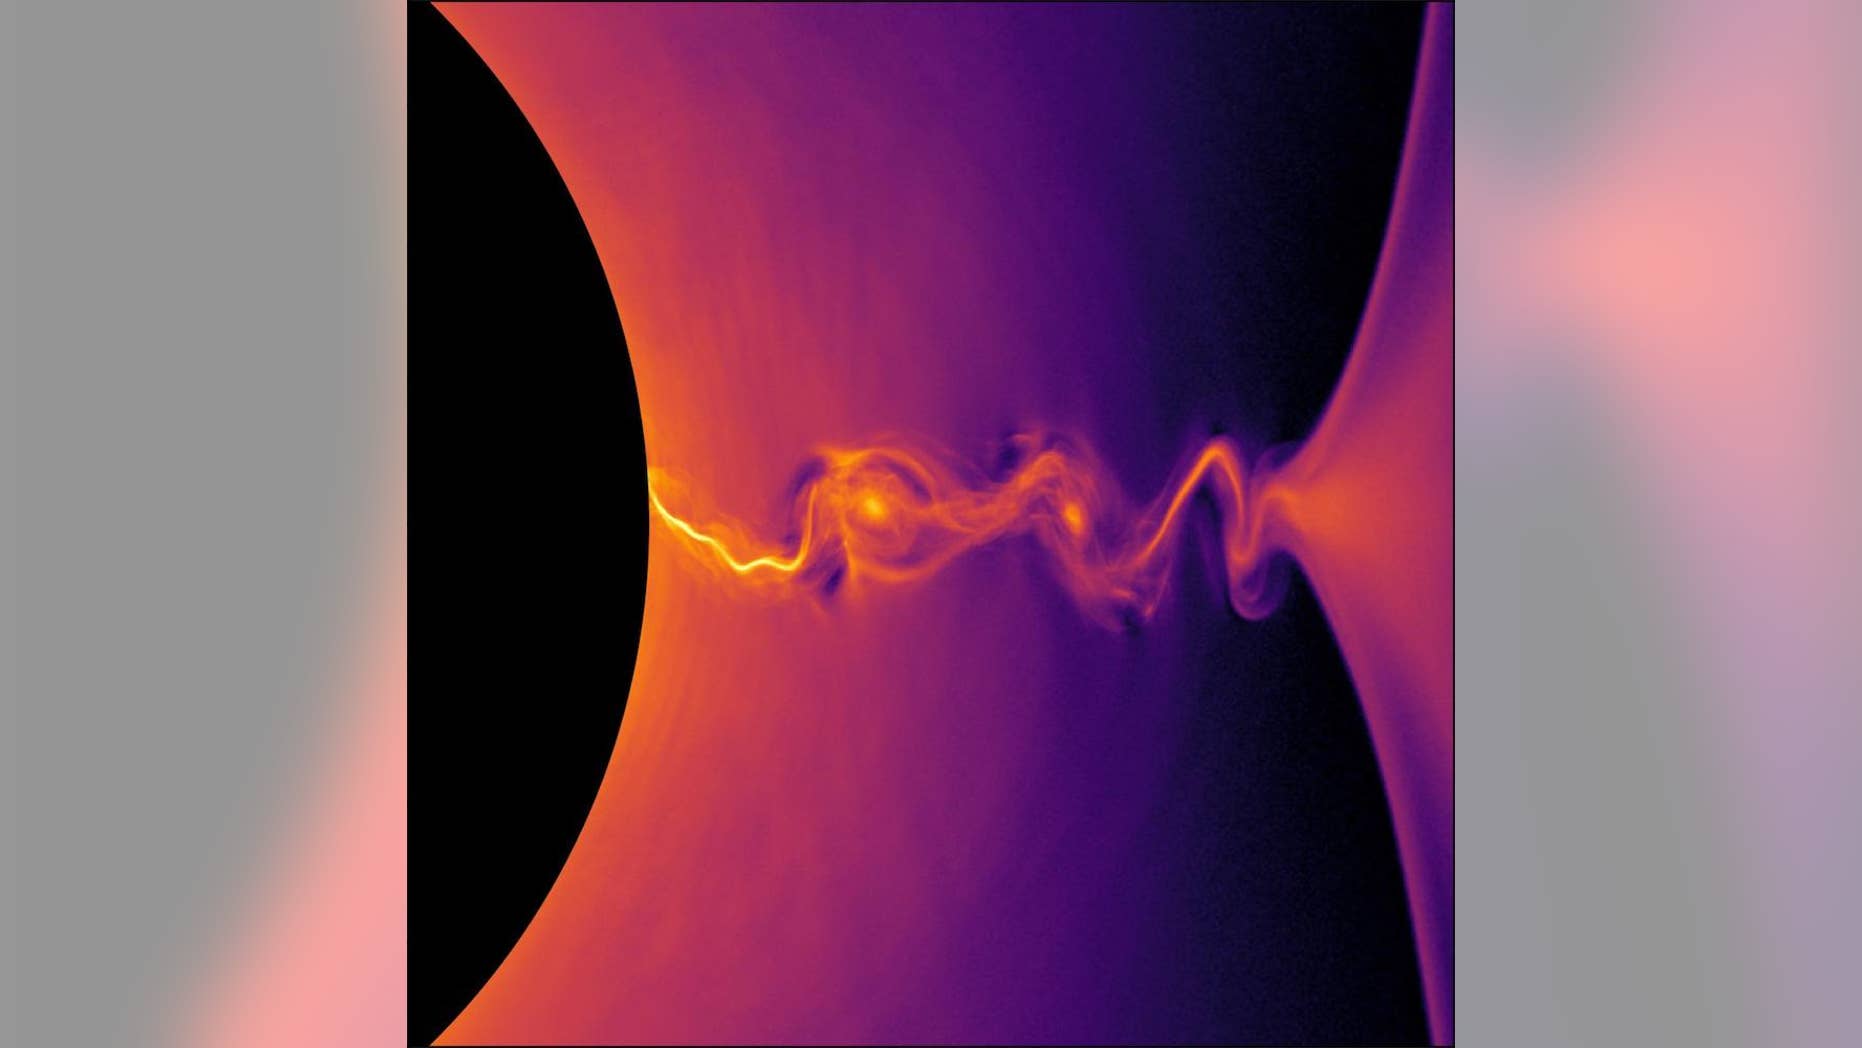 Black hole plasma jets shine like cosmic lighthouses in these gorgeous images